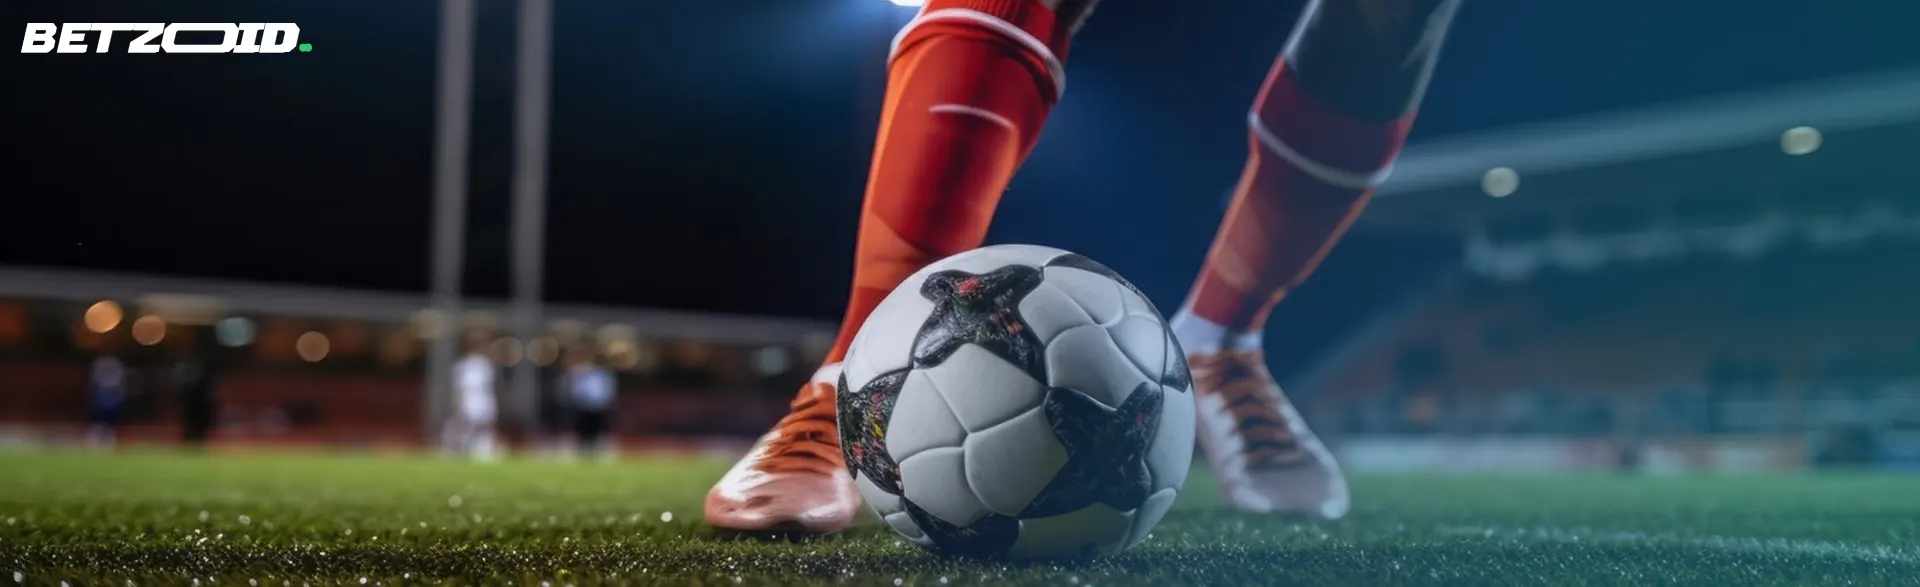 Piernas de futbolista preparándose para golpear un balón, ilustrando la acción en sitios de apuestas de fútbol.